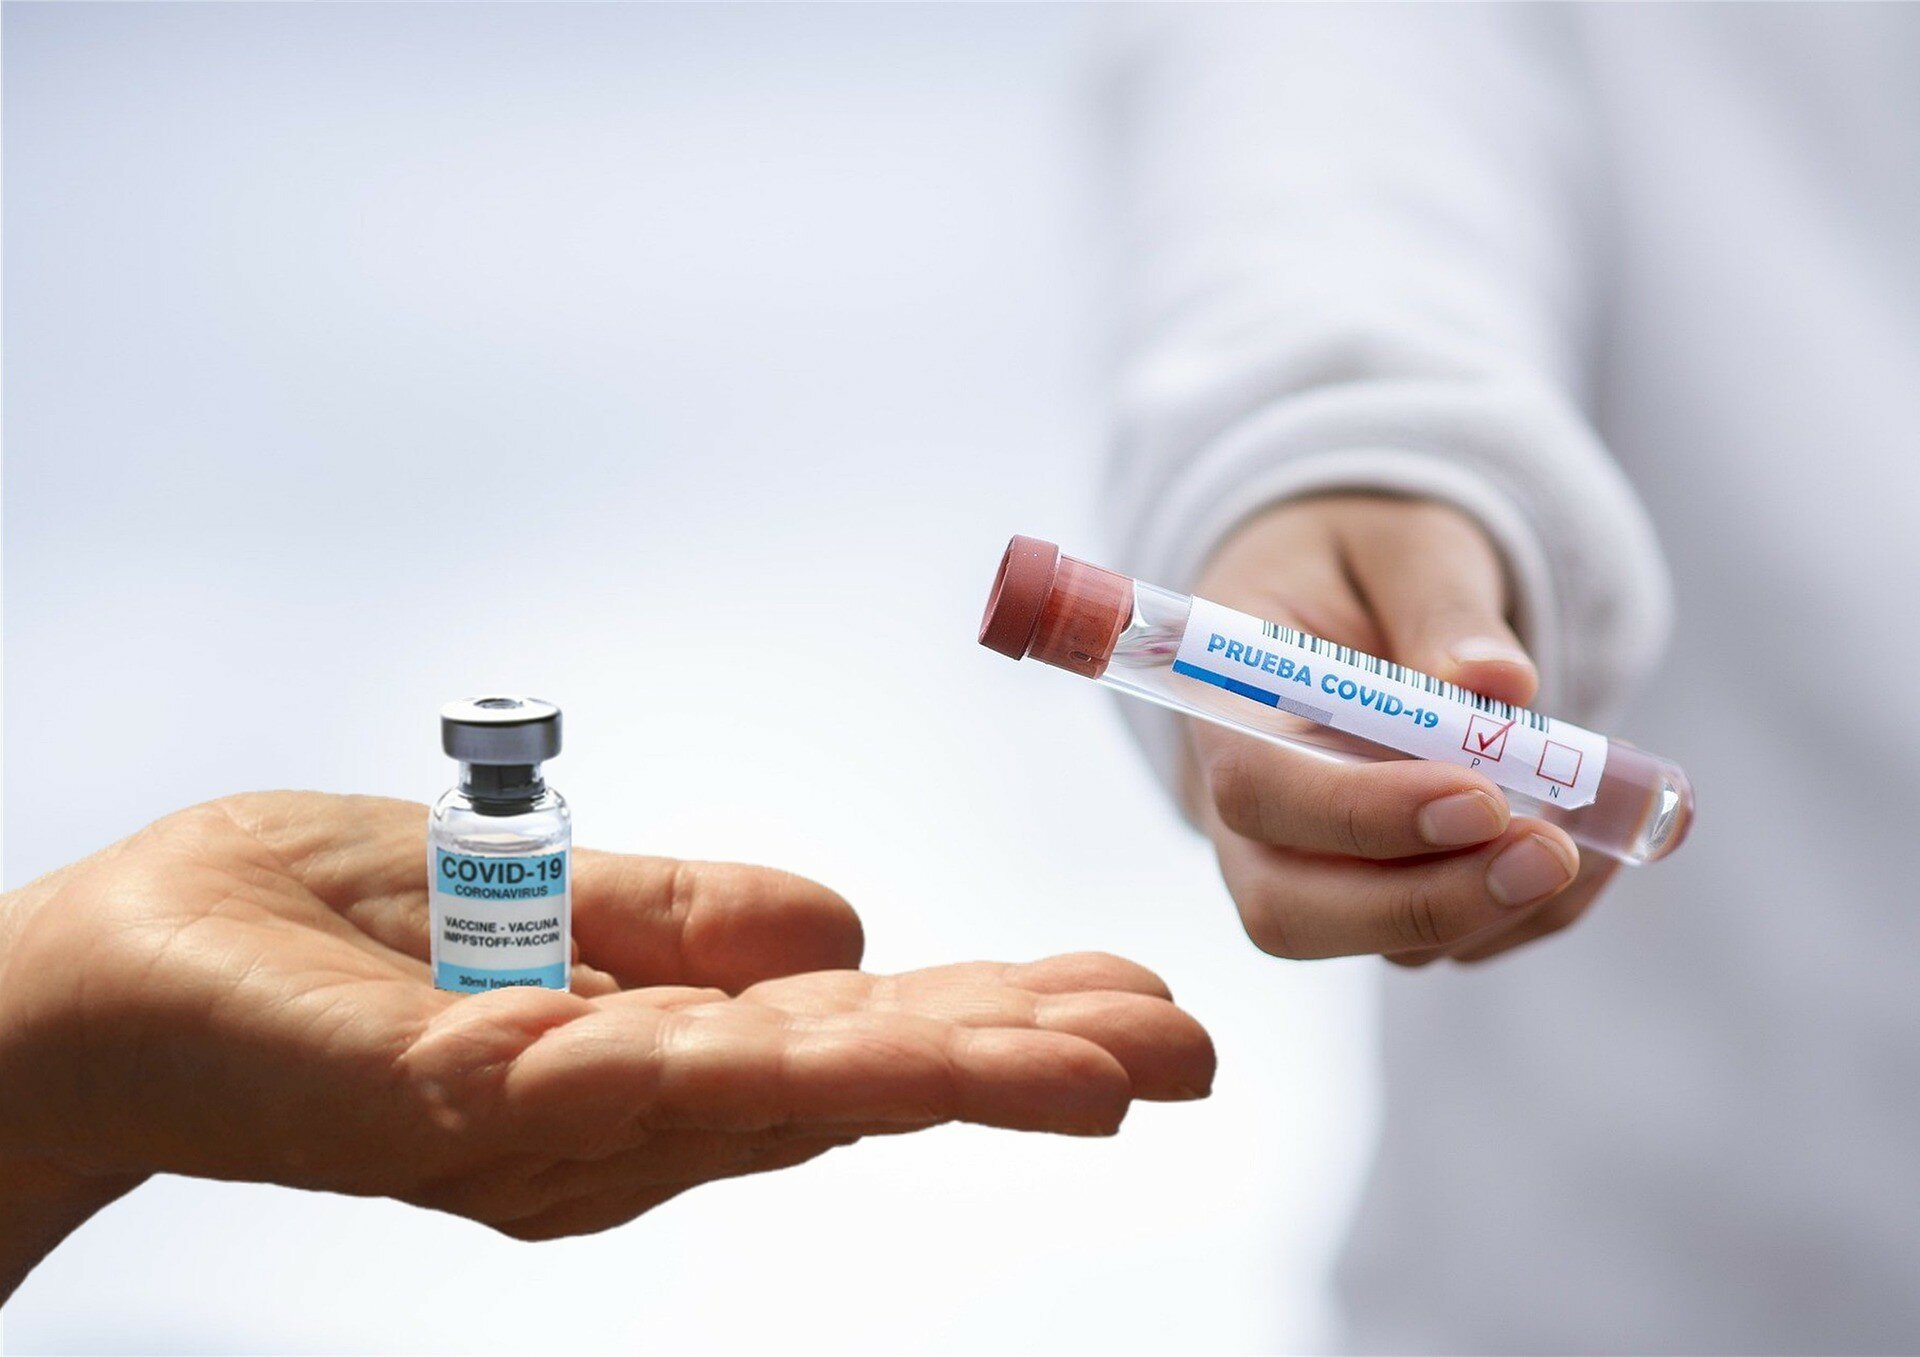 Вакцину от COVID-19 получили 20 млн британцев - Джонсон